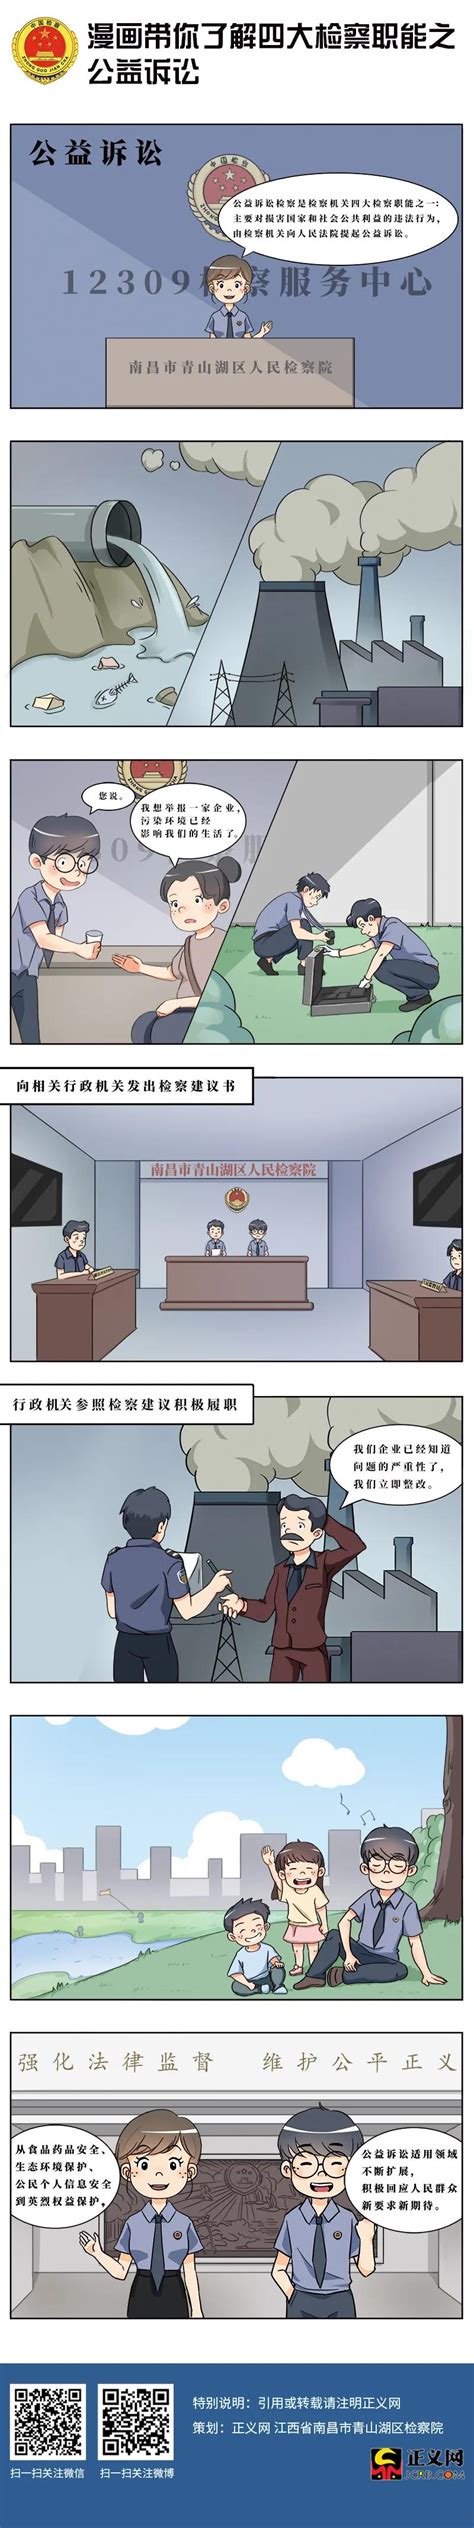 【漫画】你知道检察院是干啥的吗？看故事找答案吧~_内蒙古自治区根河市人民检察院